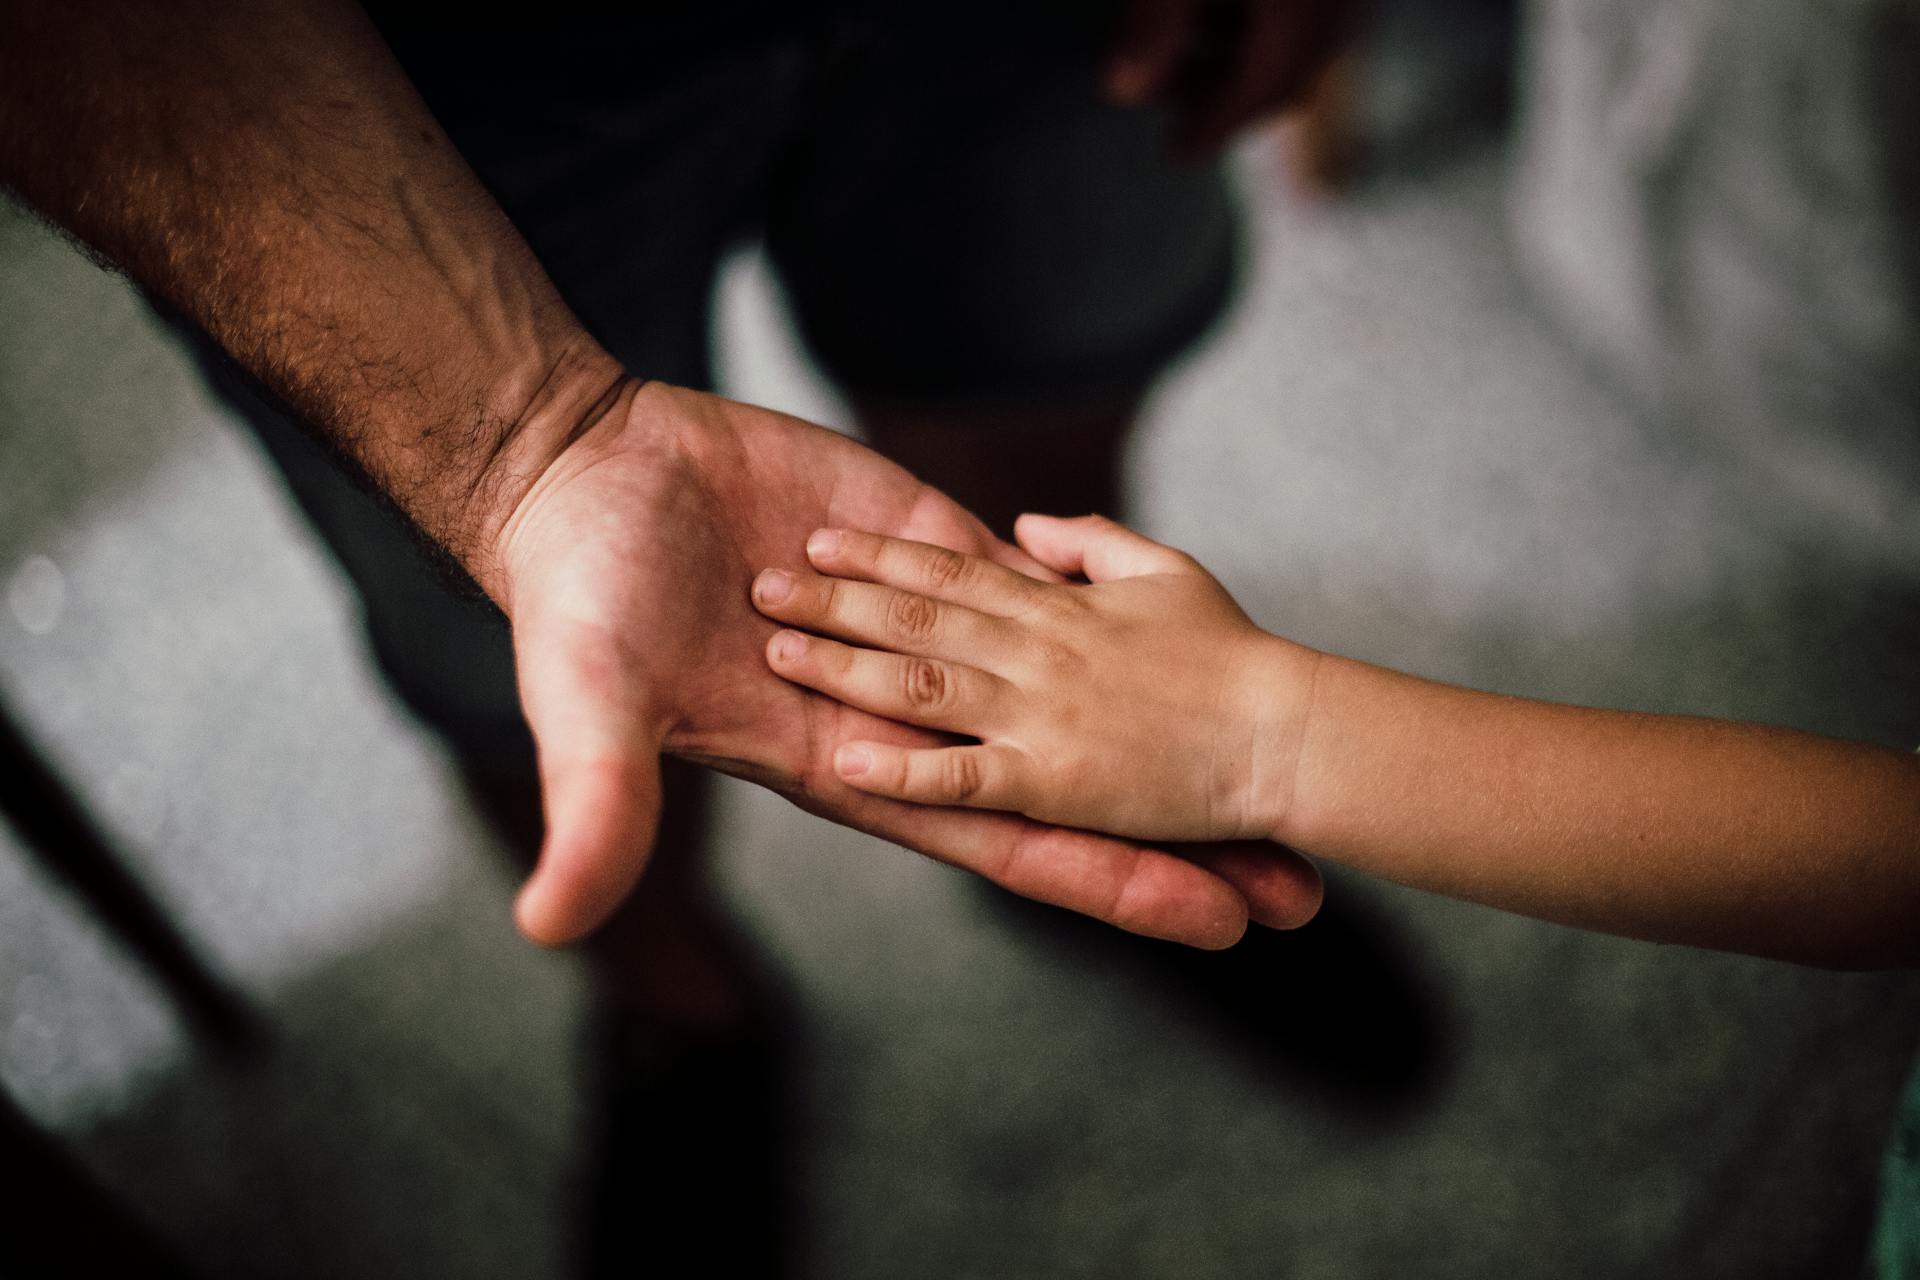 La main d'un enfant reposant sur celle de son père | Source : Pexels